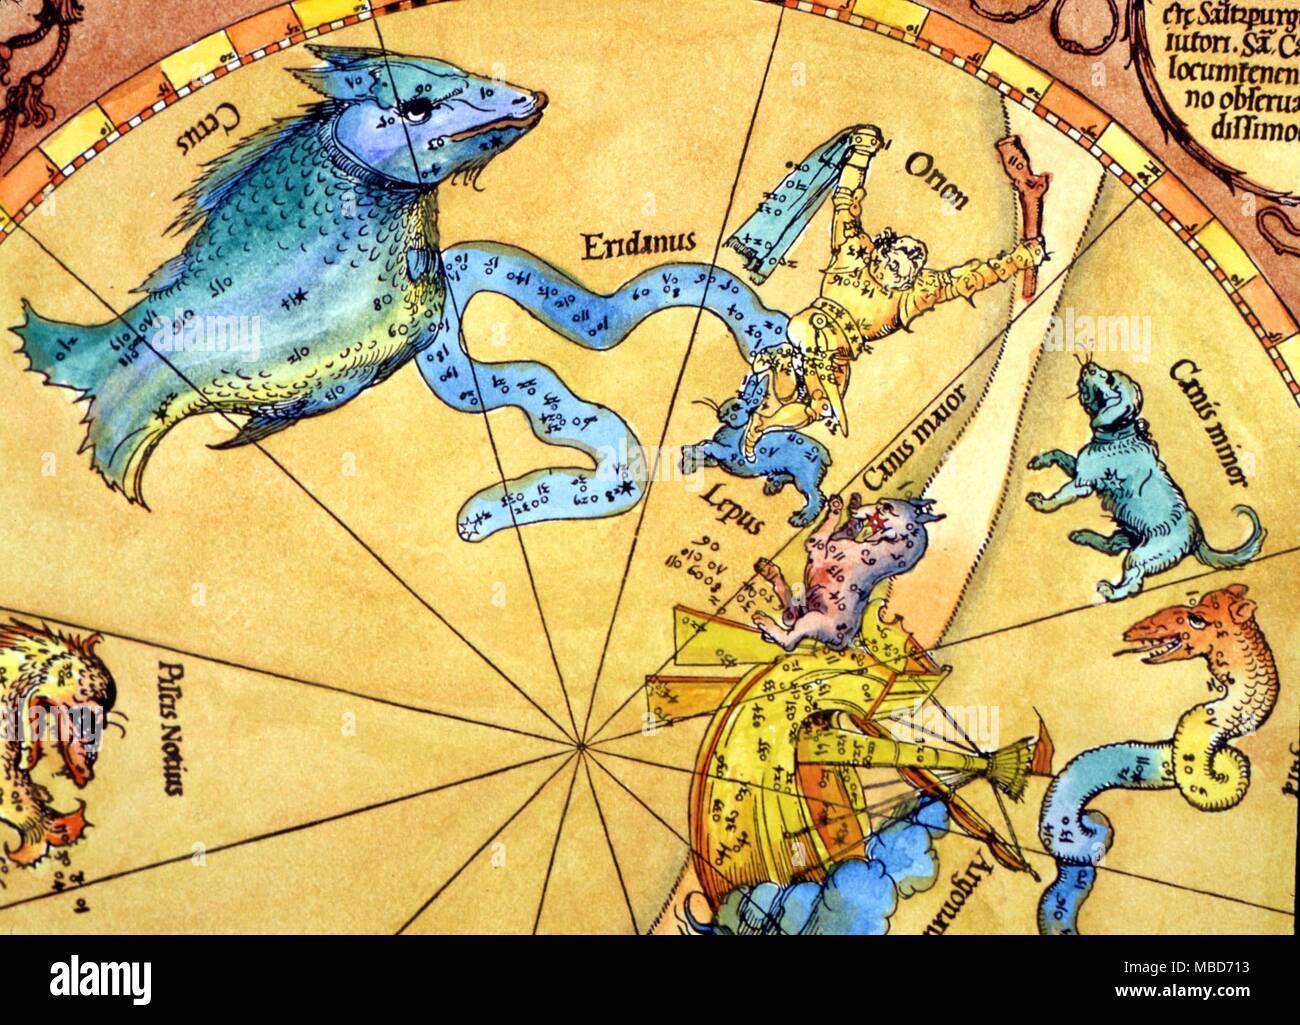 Constelaciones y estrellas - Mapas de las estrellas fijas de Sirius en Canis Major - la estrella de color rojo, está en la boca del perro mayor, debajo de Lepus, la liebre - detalle del sur mapa de constelaciones y Heinfogel Stabius, cortada por Albrecht Durer en 1515 Foto de stock